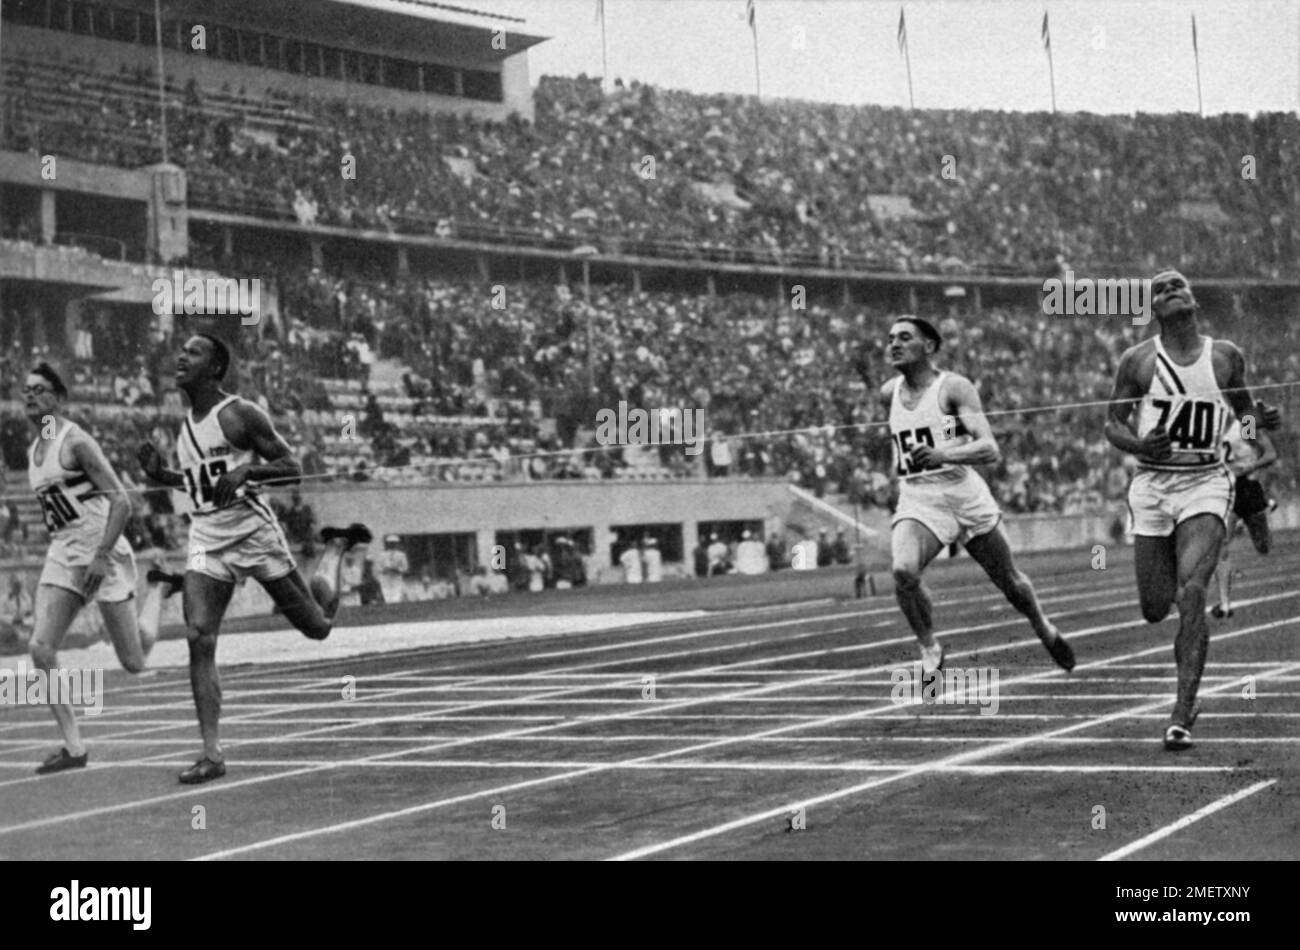 À la fin de la course de 400 m, Archie Williams, États-Unis (2nd de gauche) gagne devant Brown, Grande-Bretagne et lu Valle, États-Unis Banque D'Images